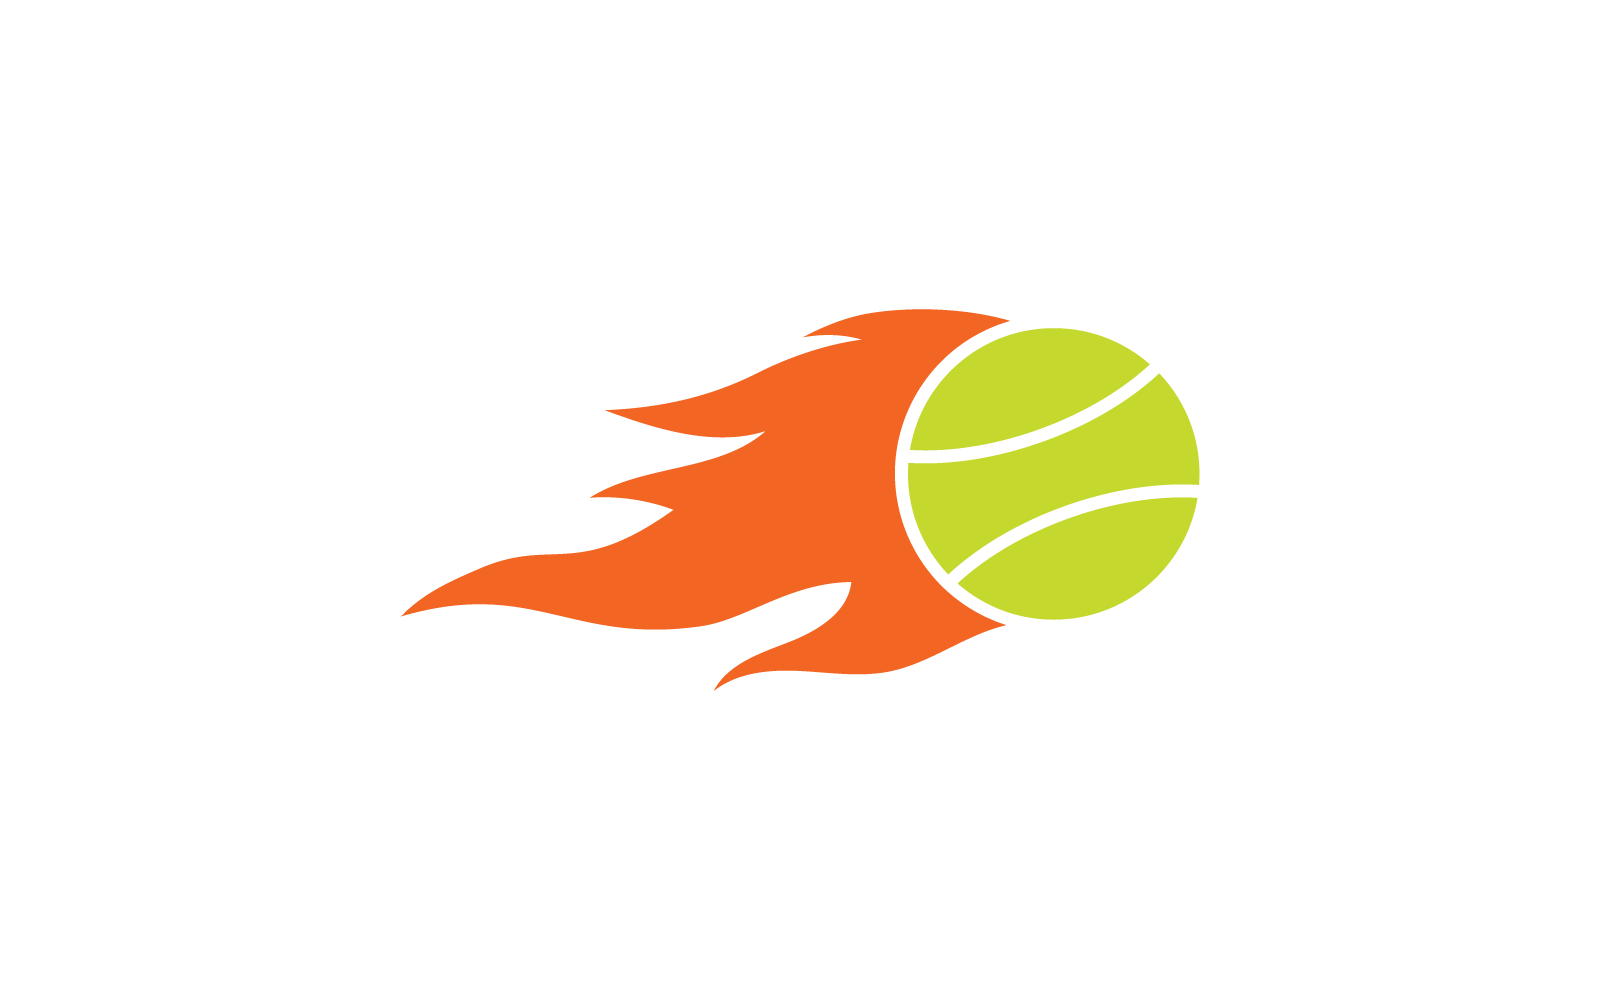 Tennis ball logo vector design template